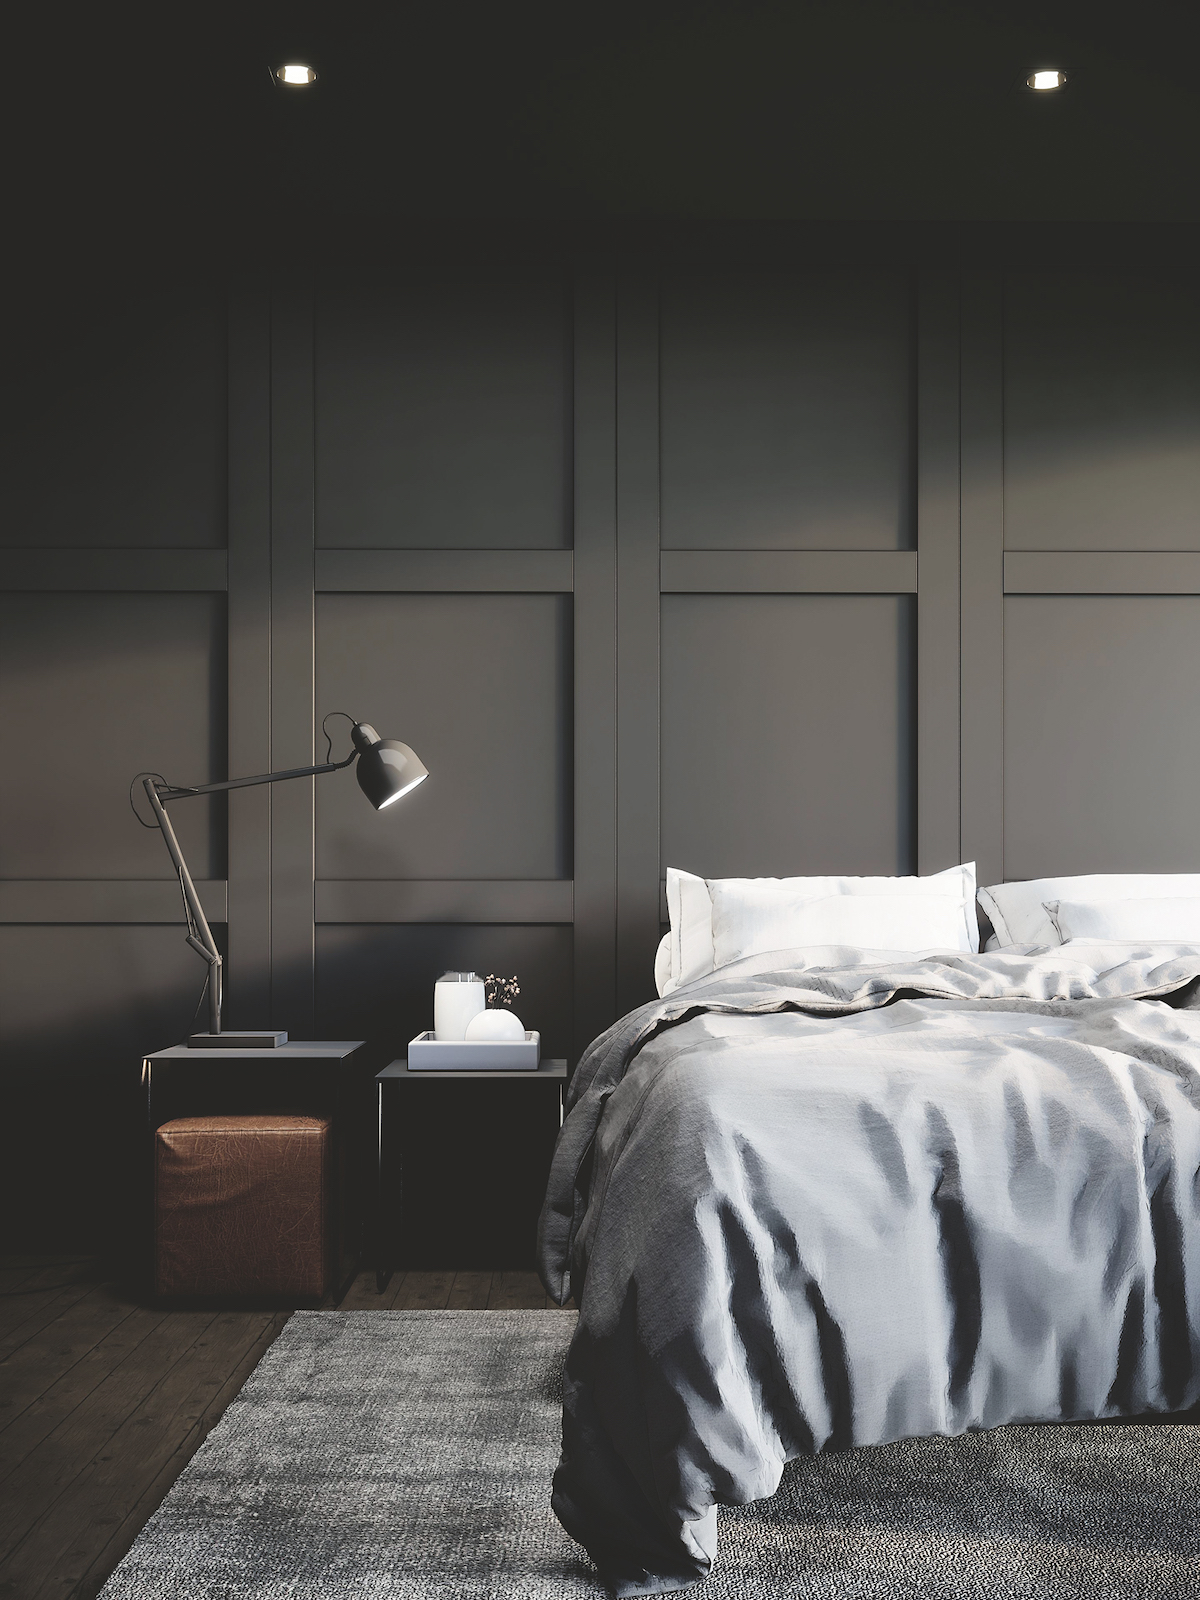 Black modern bedroom mock up interior design with furniture